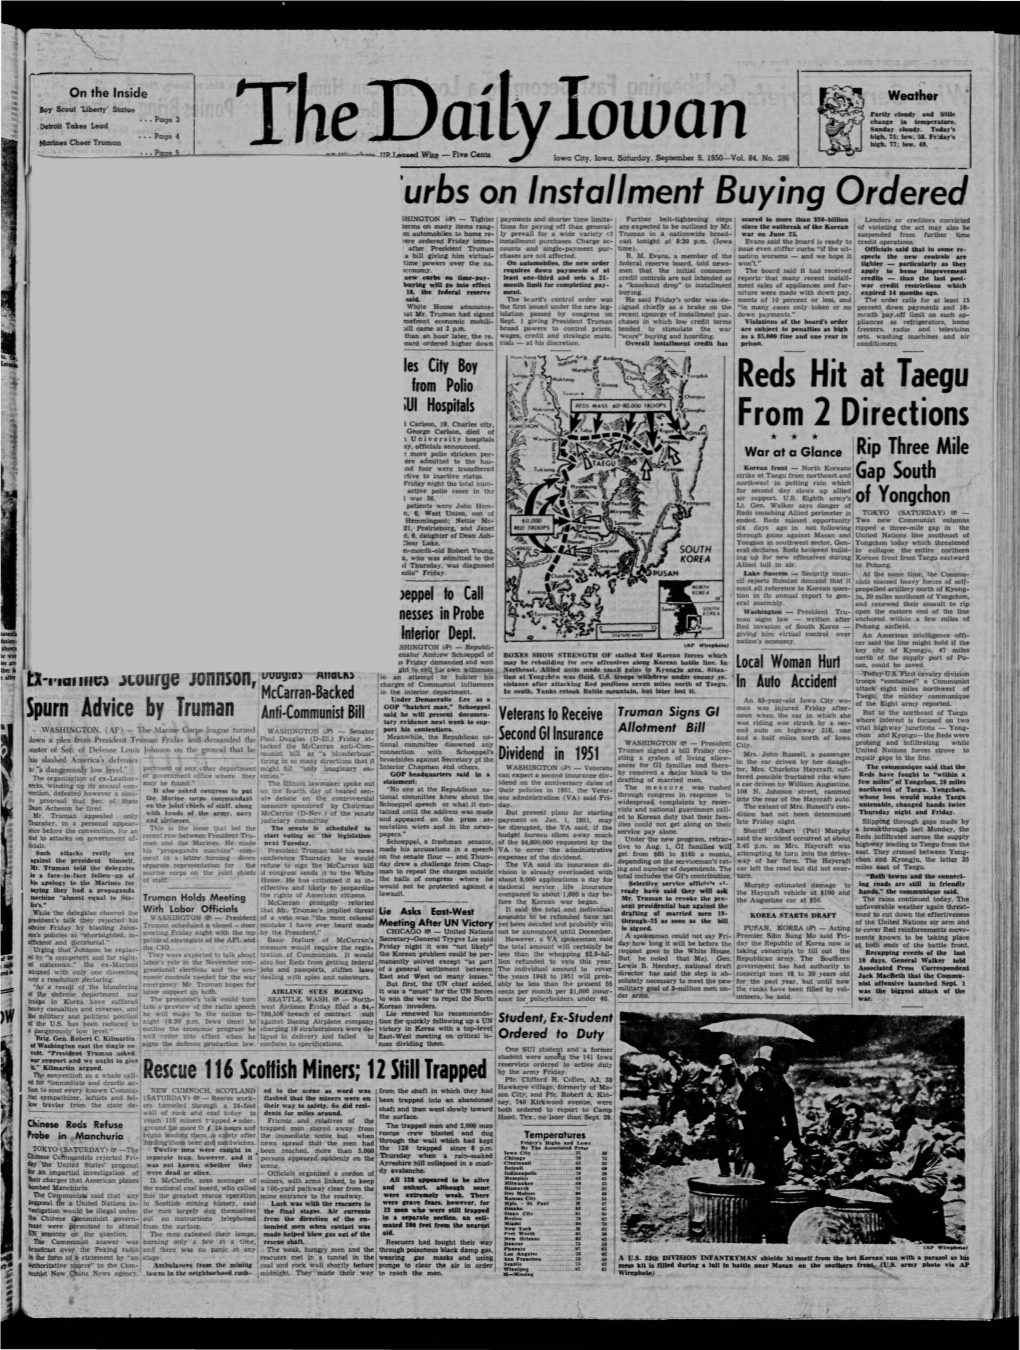 Daily Iowan (Iowa City, Iowa), 1950-09-09